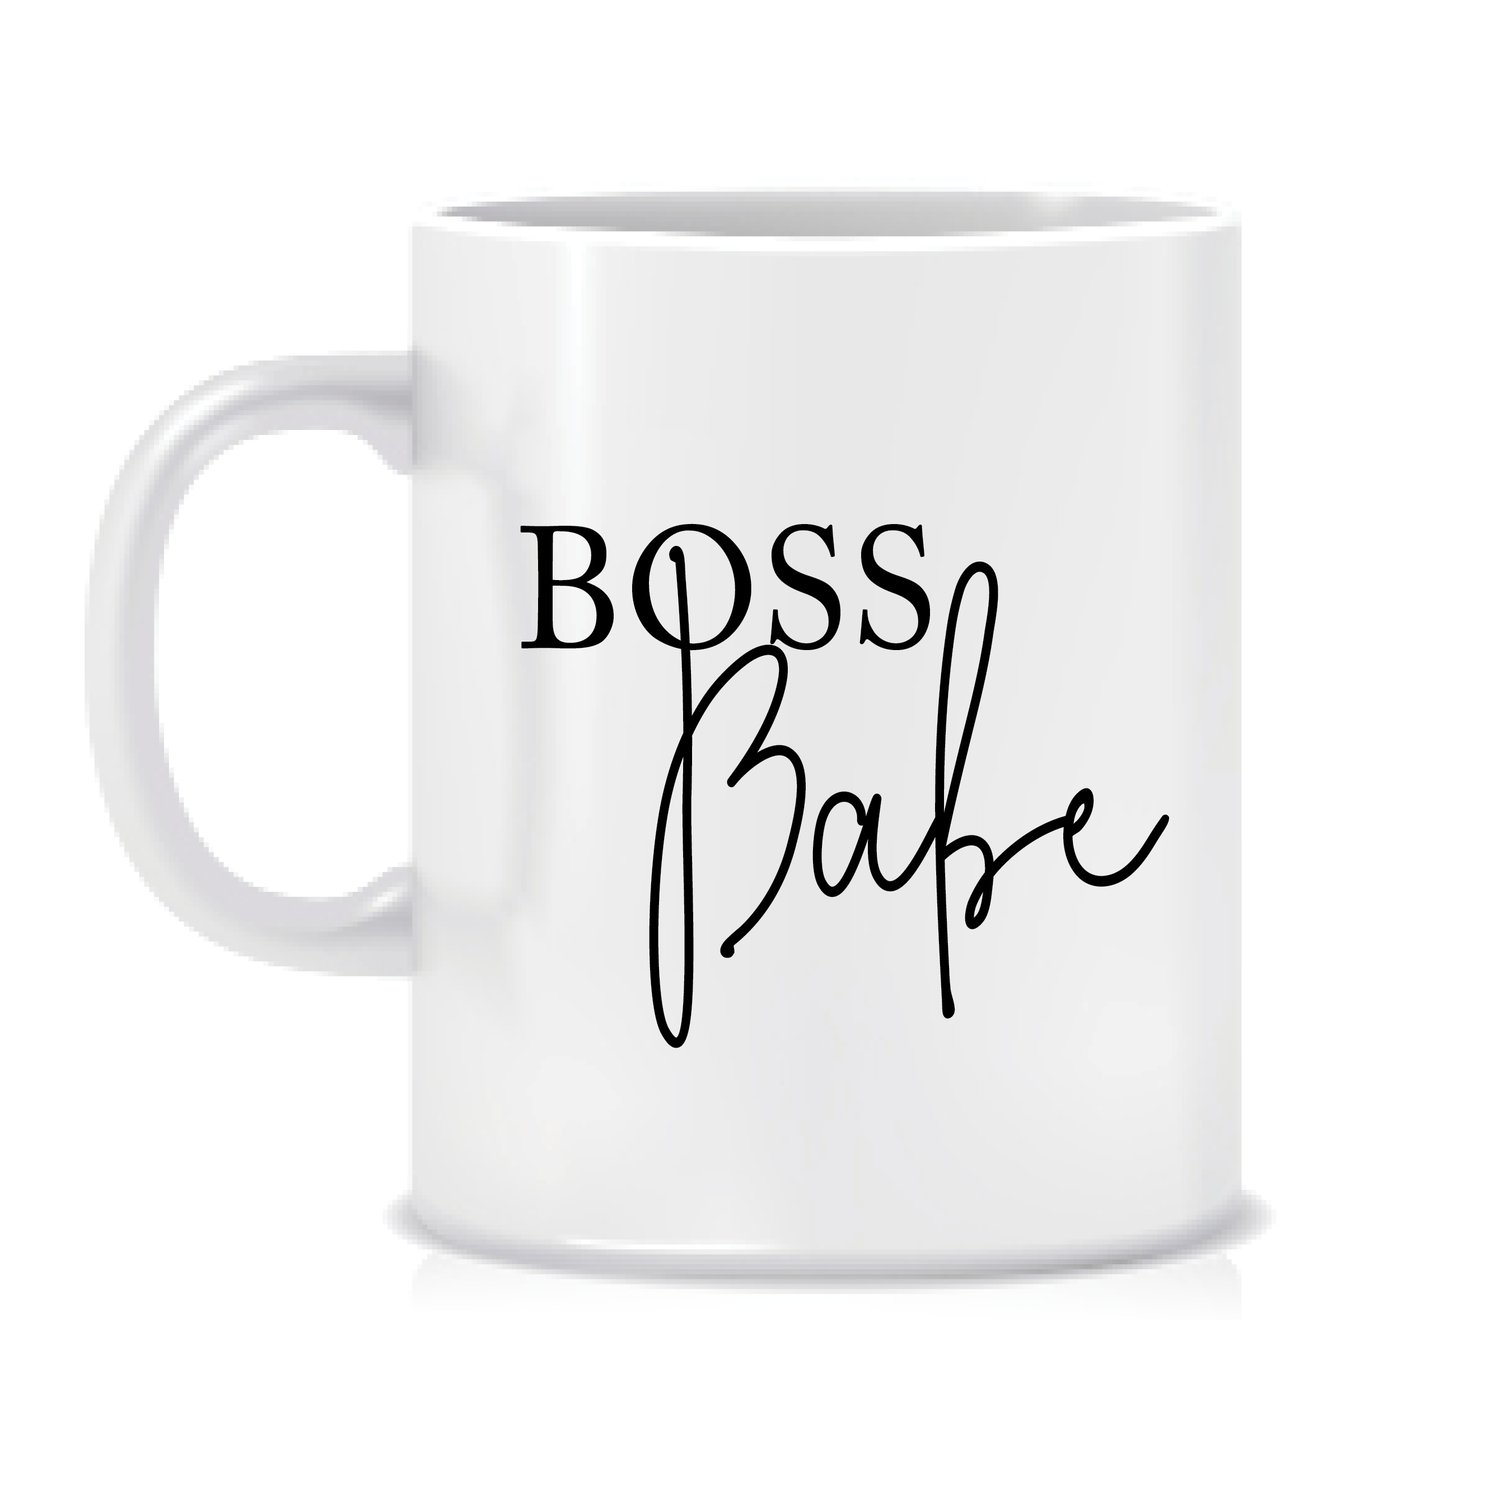 Image of Boss Babe mug